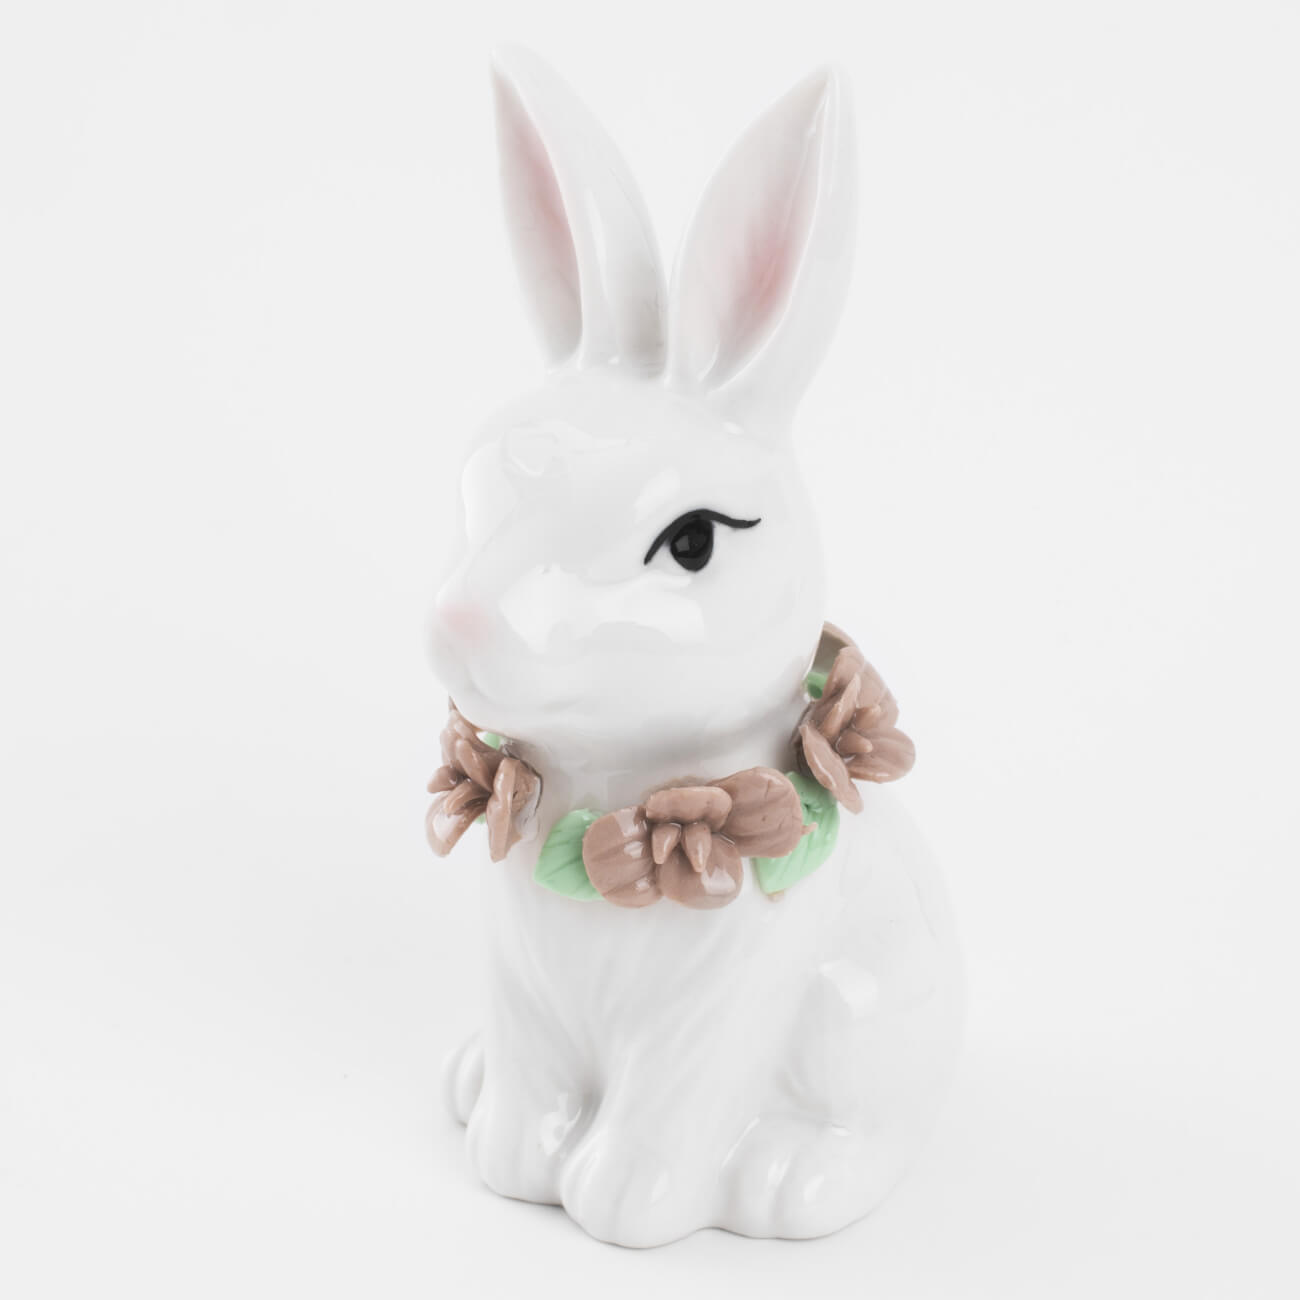 статуэтка с подсветкой 13 см фарфор p белая кролик с ами easter Статуэтка, 12 см, фарфор P, белая, Кролик в цветах, Easter blooming